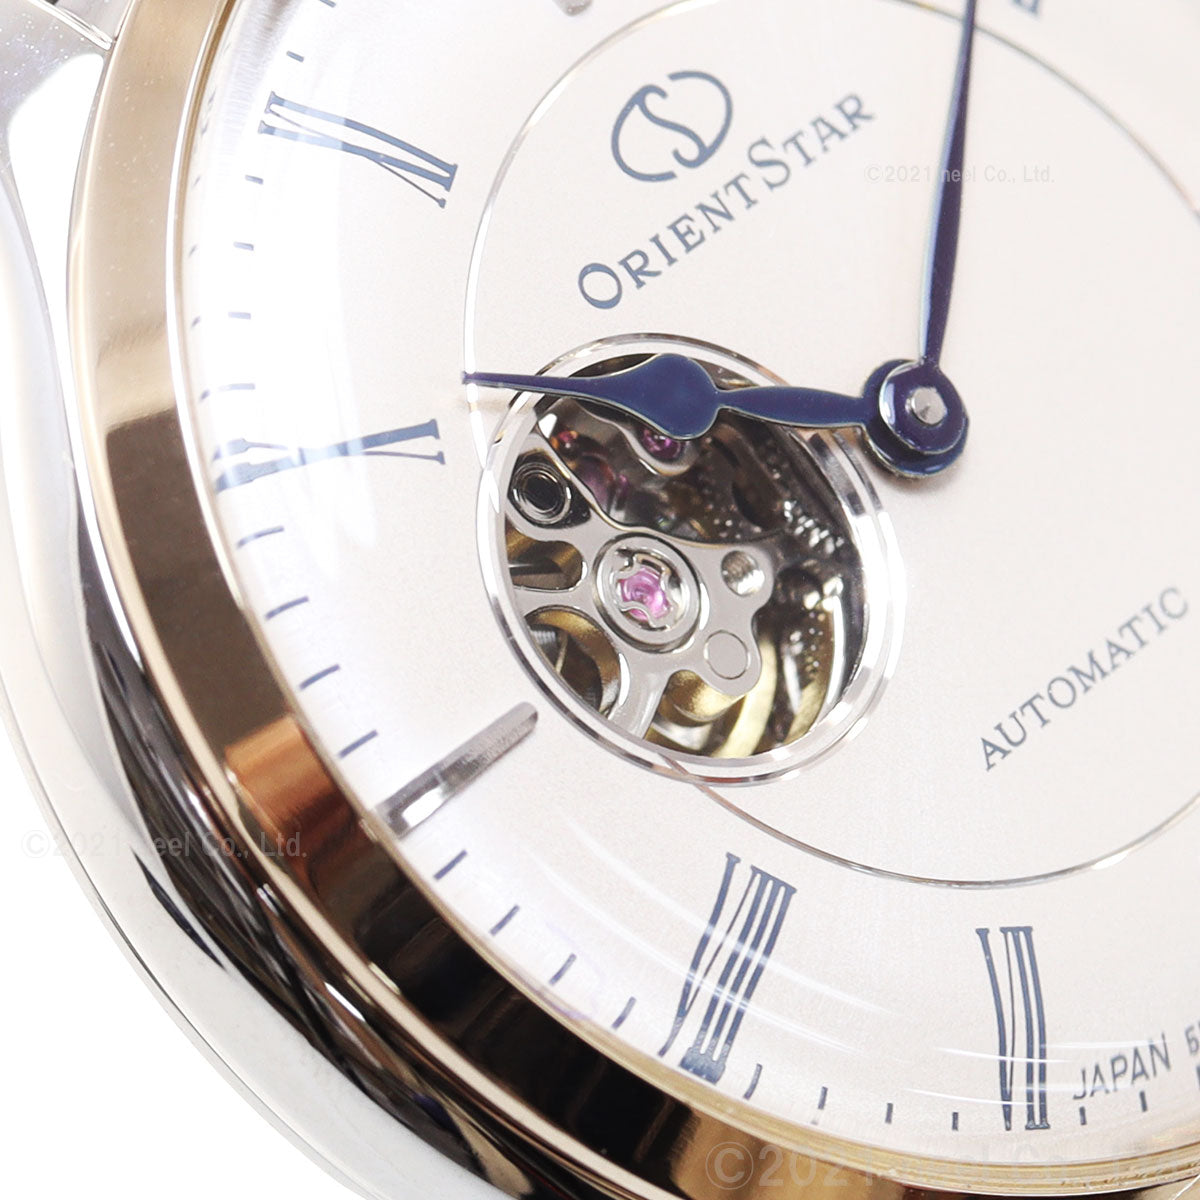 オリエントスター ORIENT STAR 腕時計 レディース 自動巻き 機械式 クラシック CLASSIC クラシックセミスケルトン RK-ND0011N